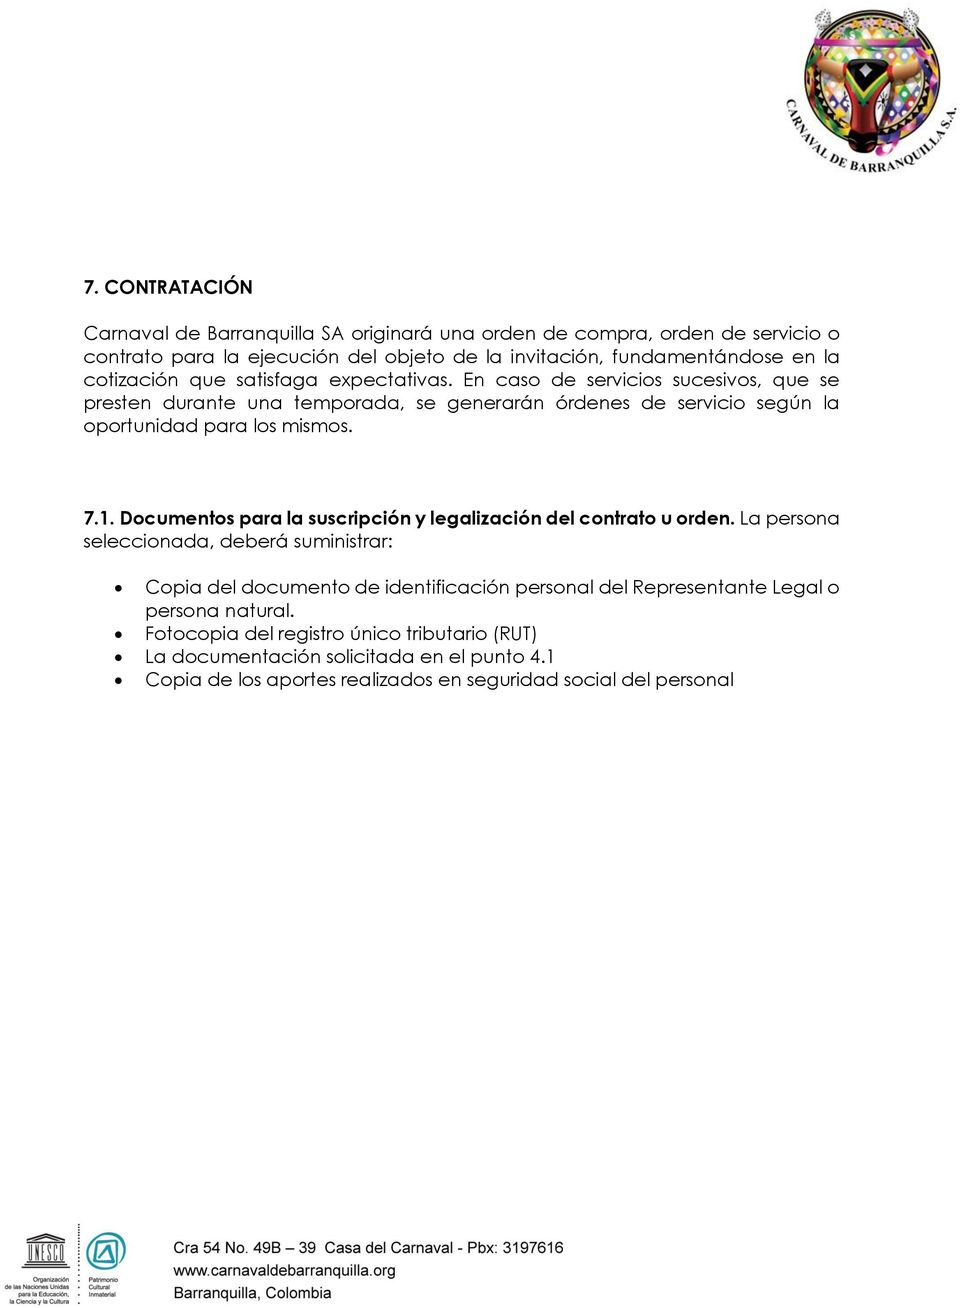 7.1. Documentos para la suscripción y legalización del contrato u orden.